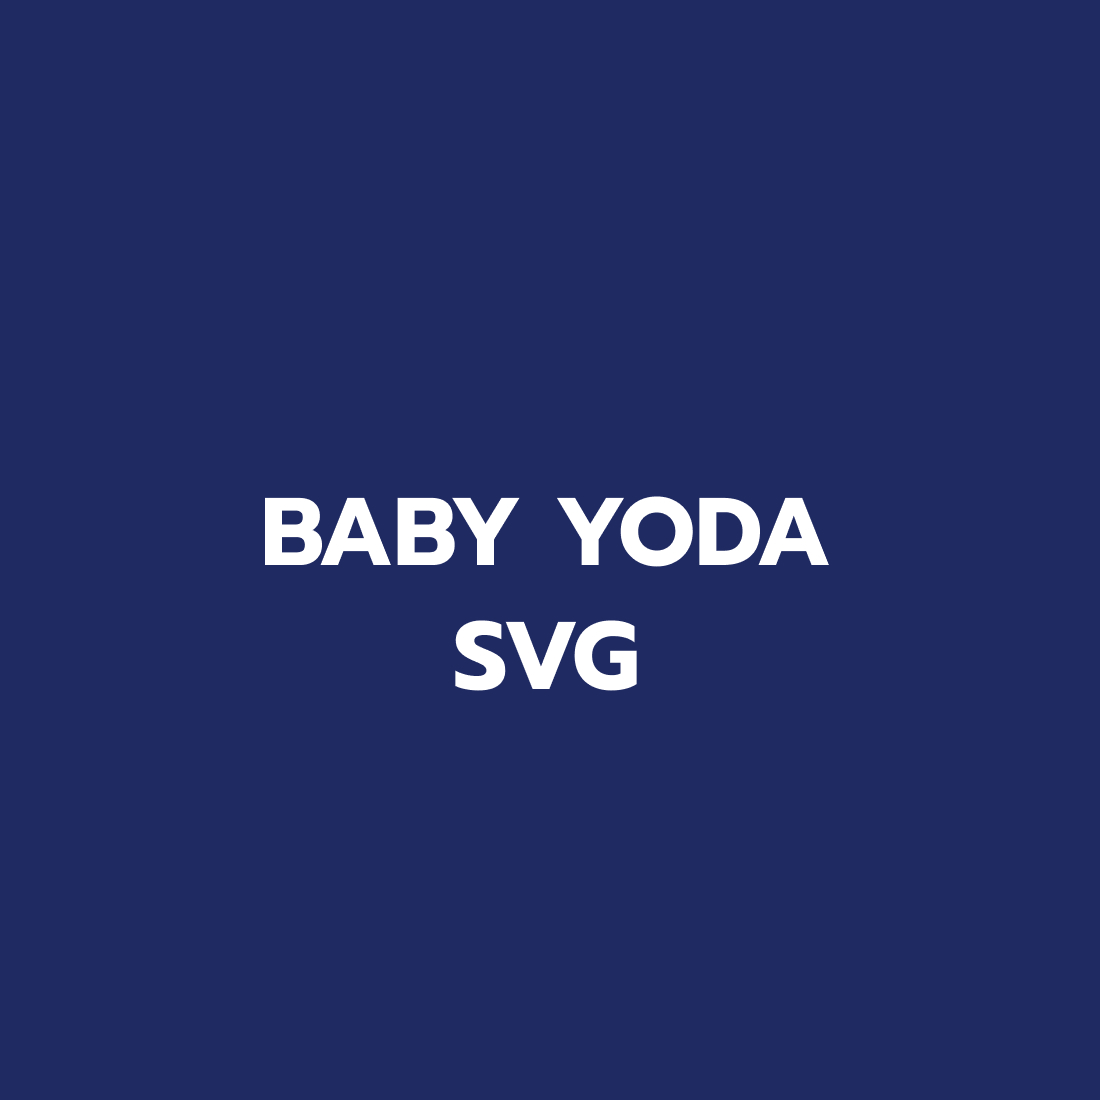 Baby Yoda SVG for Cricut preview.